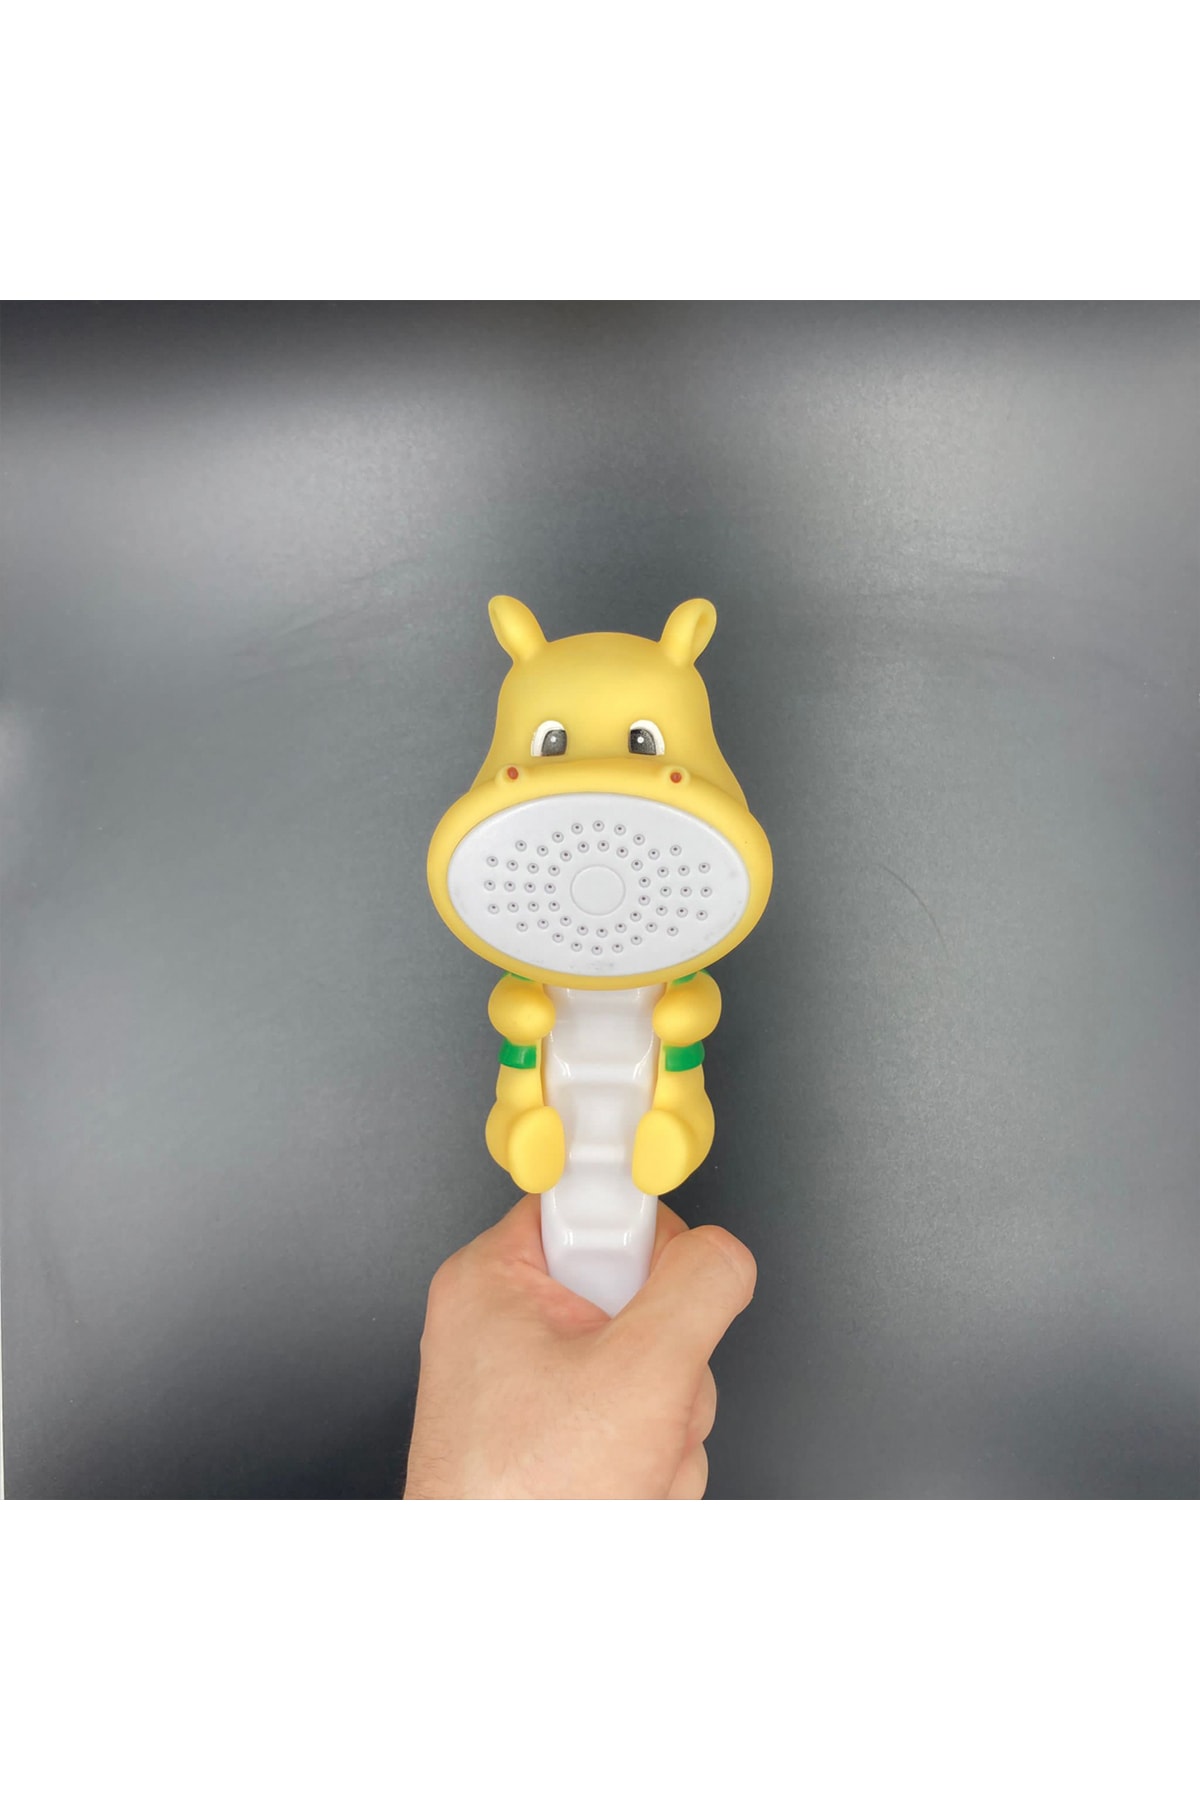 BlueFox Su Aygırı Şekilli Banyo Ve Duş Teşvik Edici Çocuk Duş Başlığı NE9504